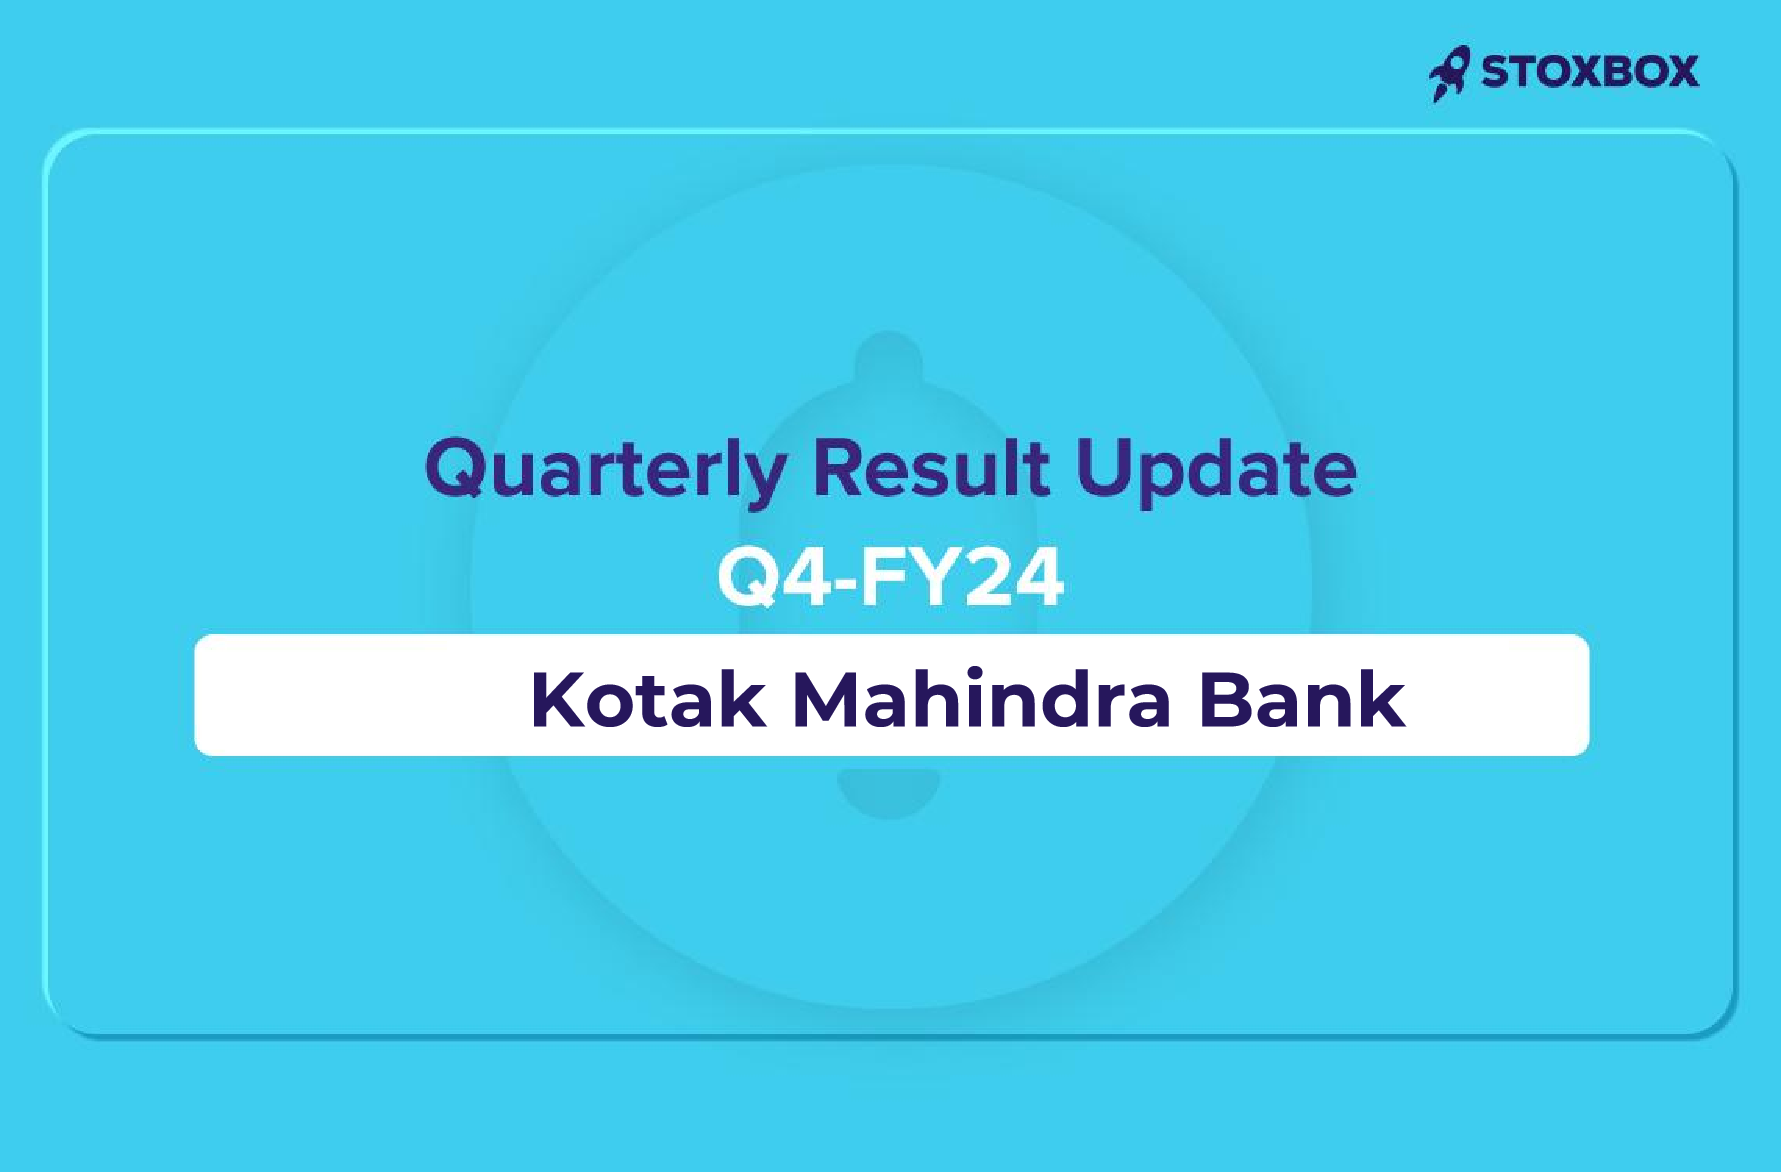 Kotak Mahindra Bank Financial Results